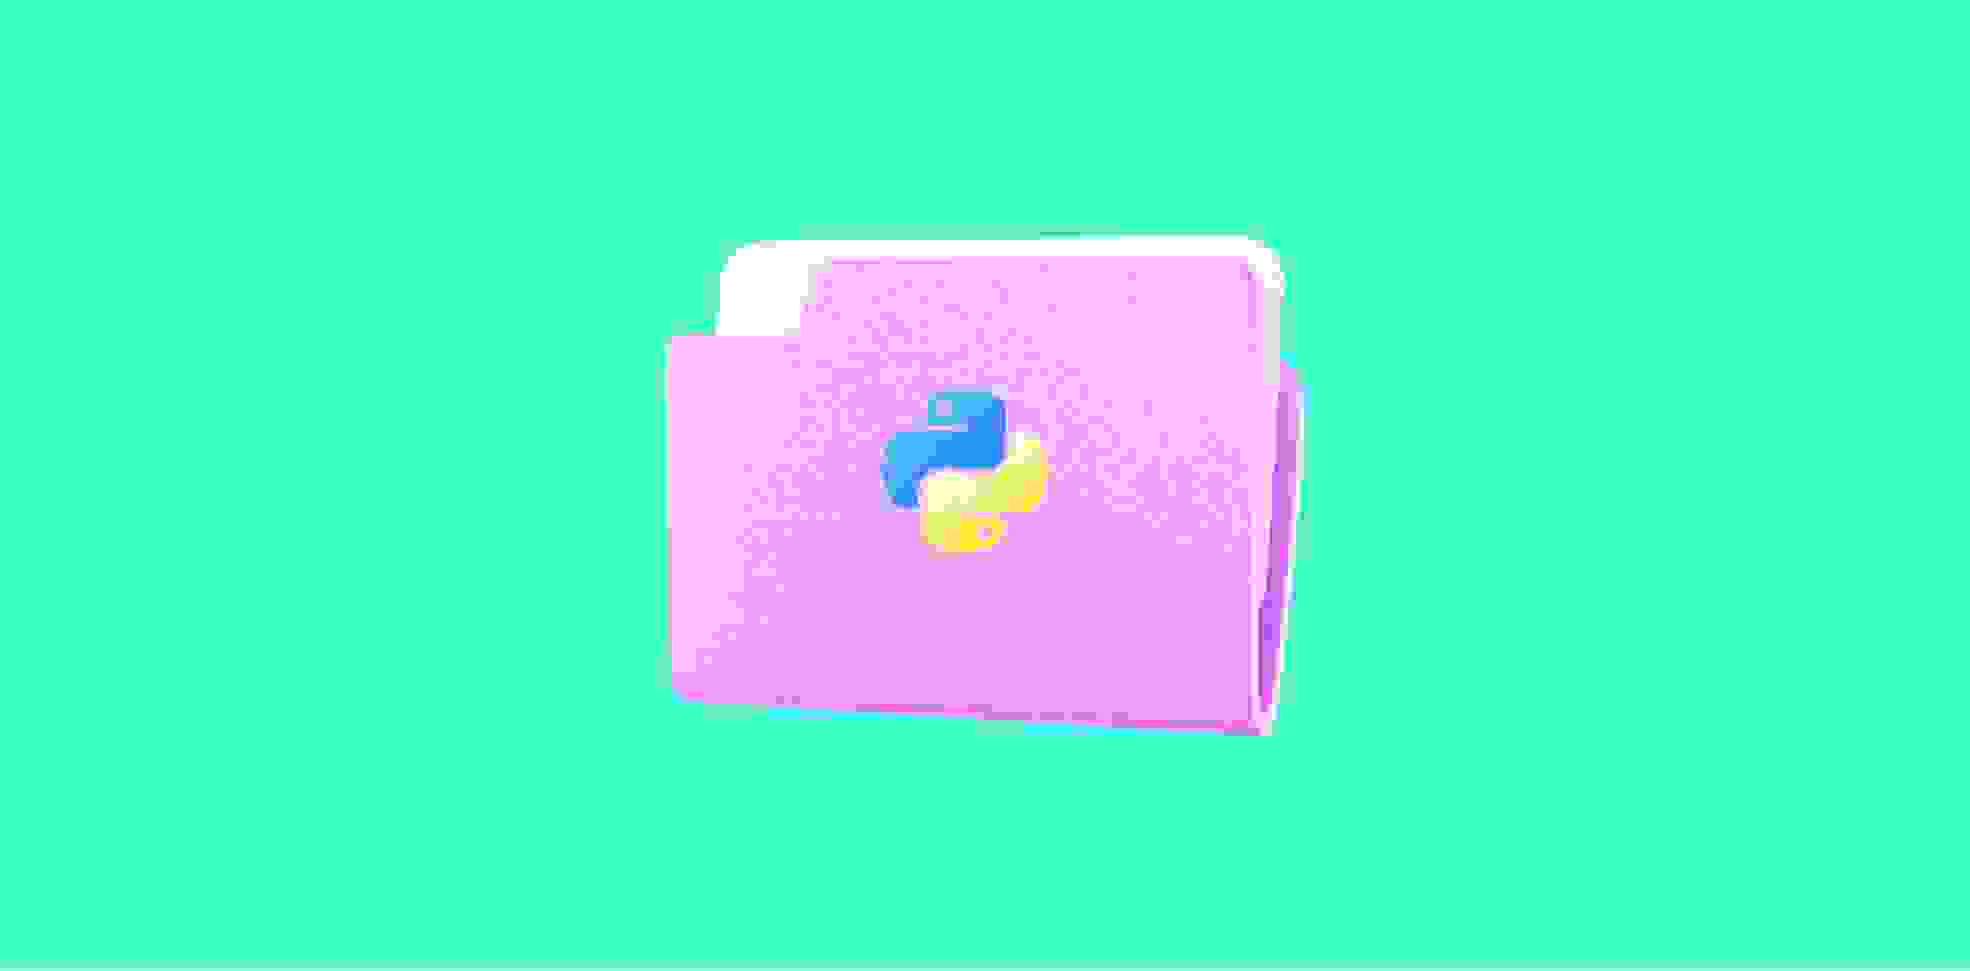 python logo on a purple folder on a green background